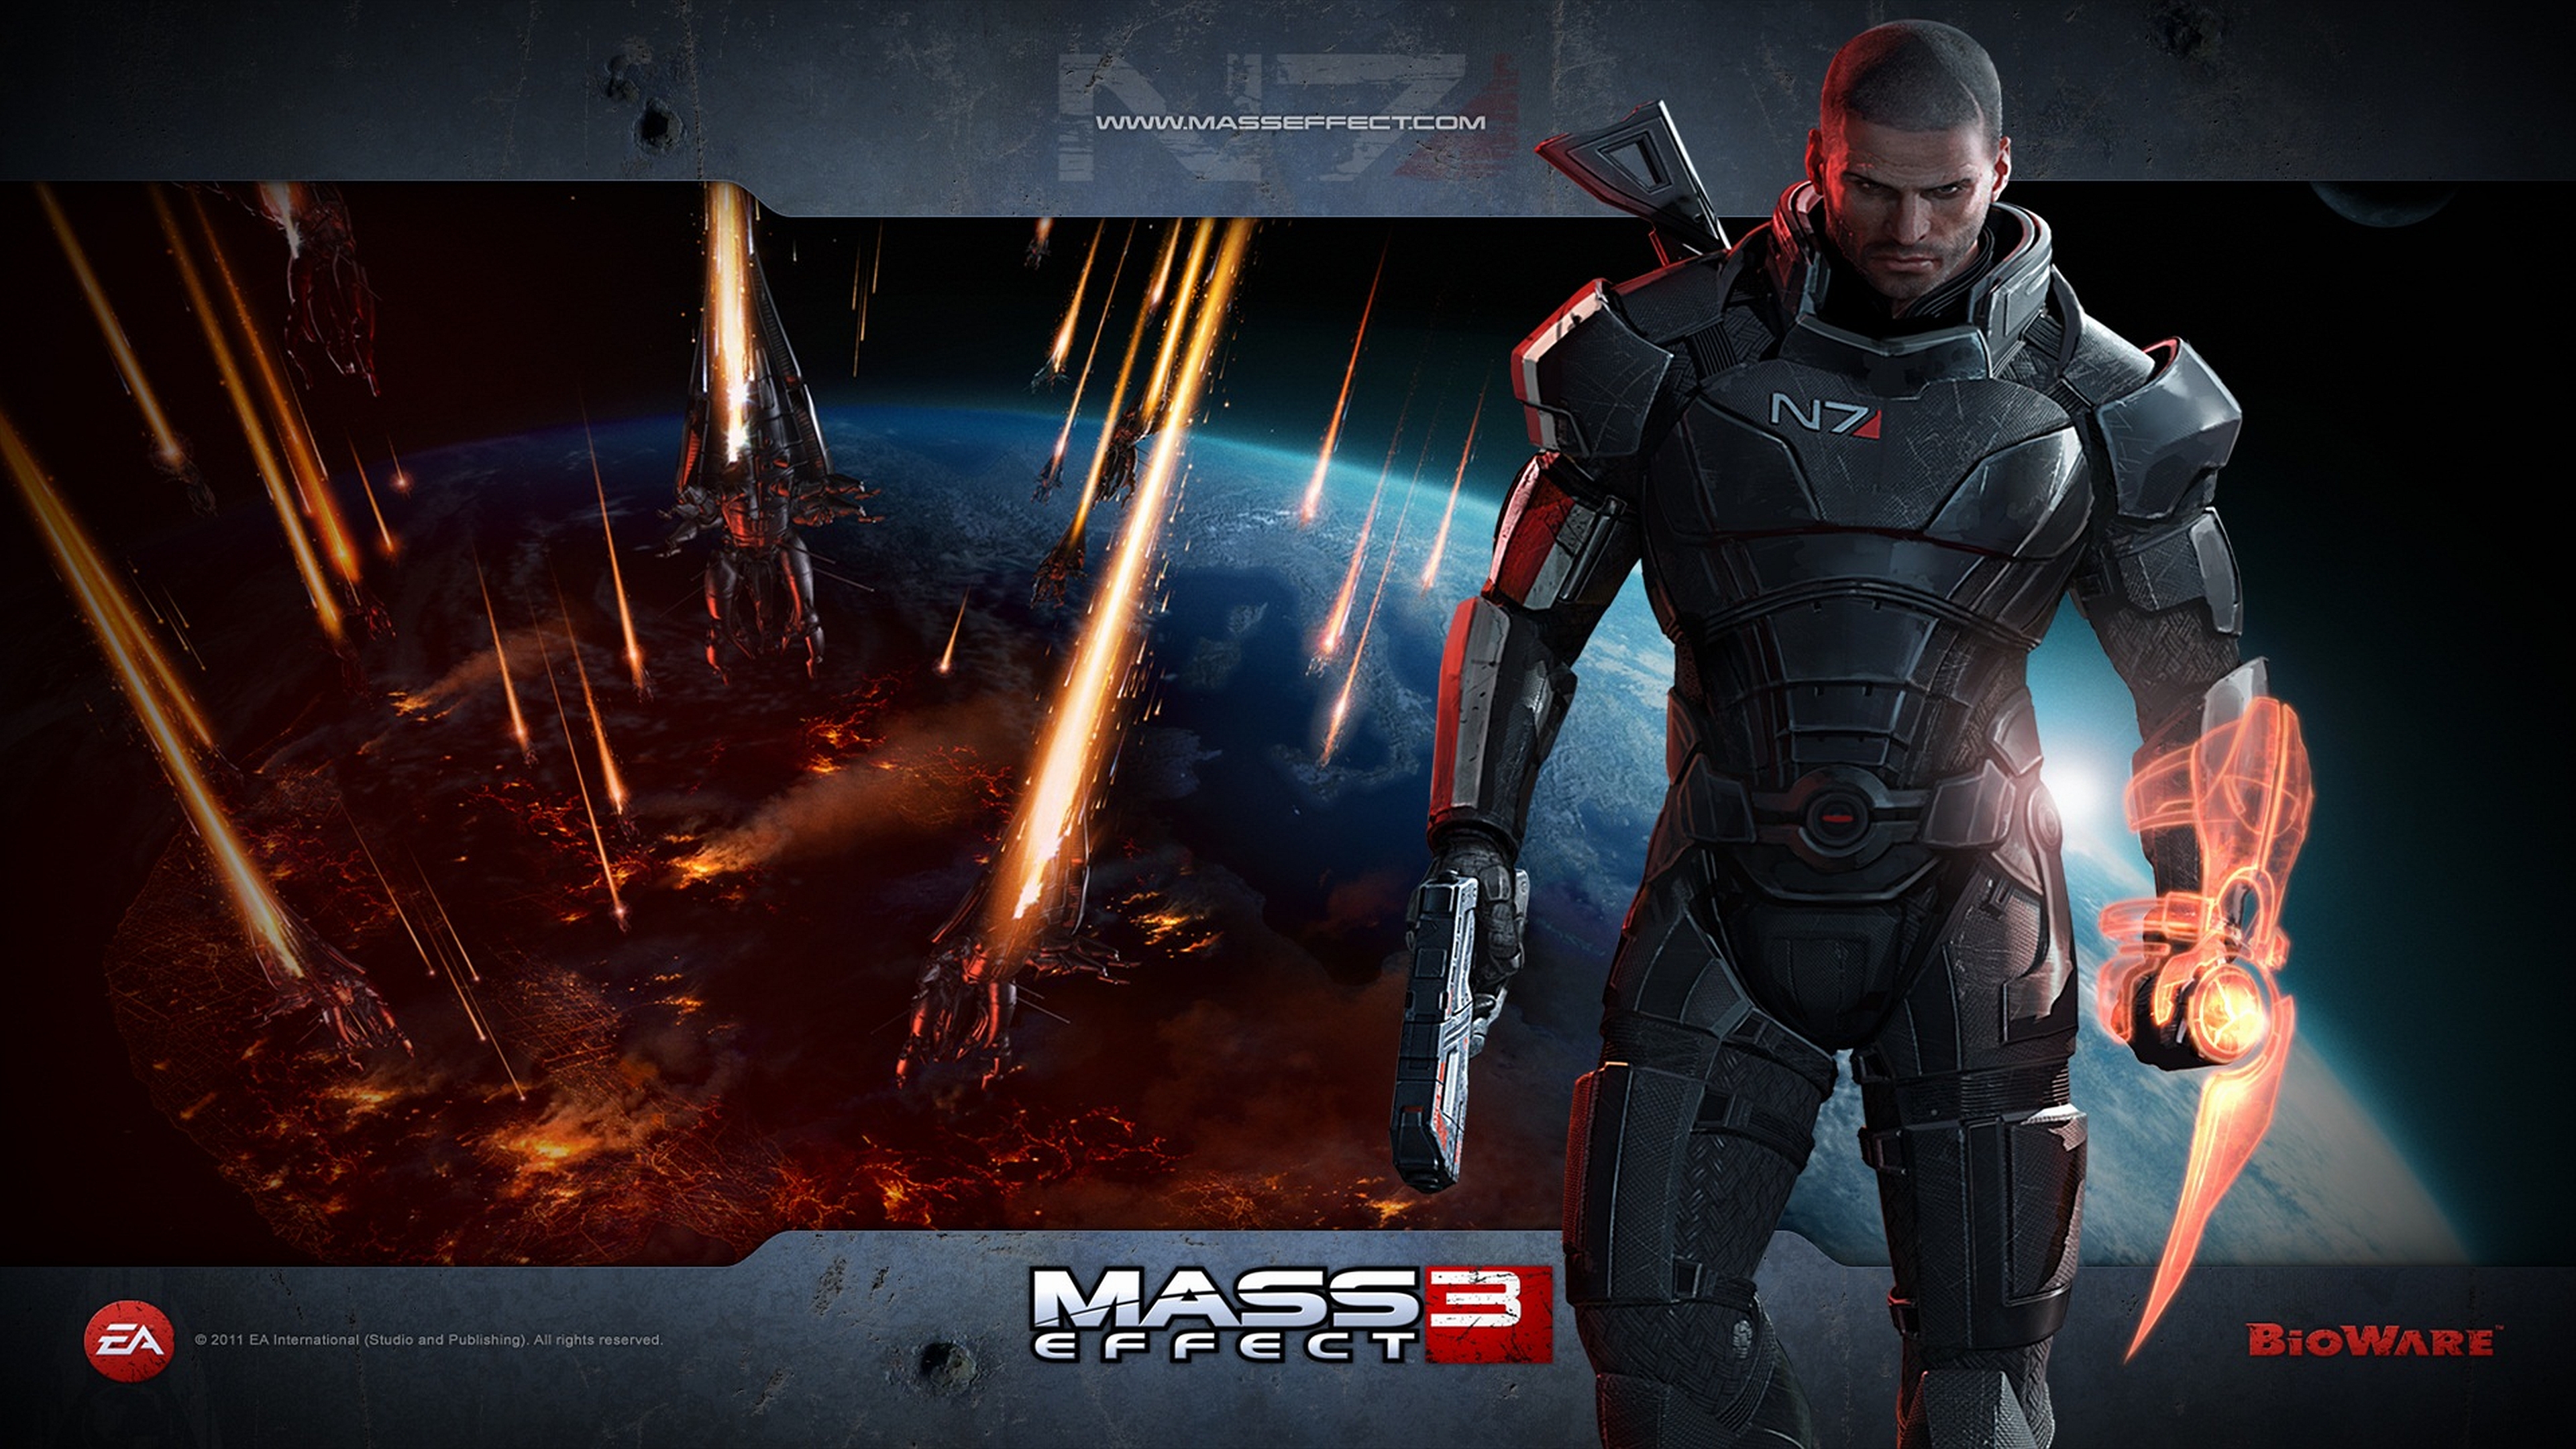 Mass effect 3 спасти. Масс Effect 3. Mass Effect 3 обложка. Mass Effect обои 4к. Mass Effect Шепард.